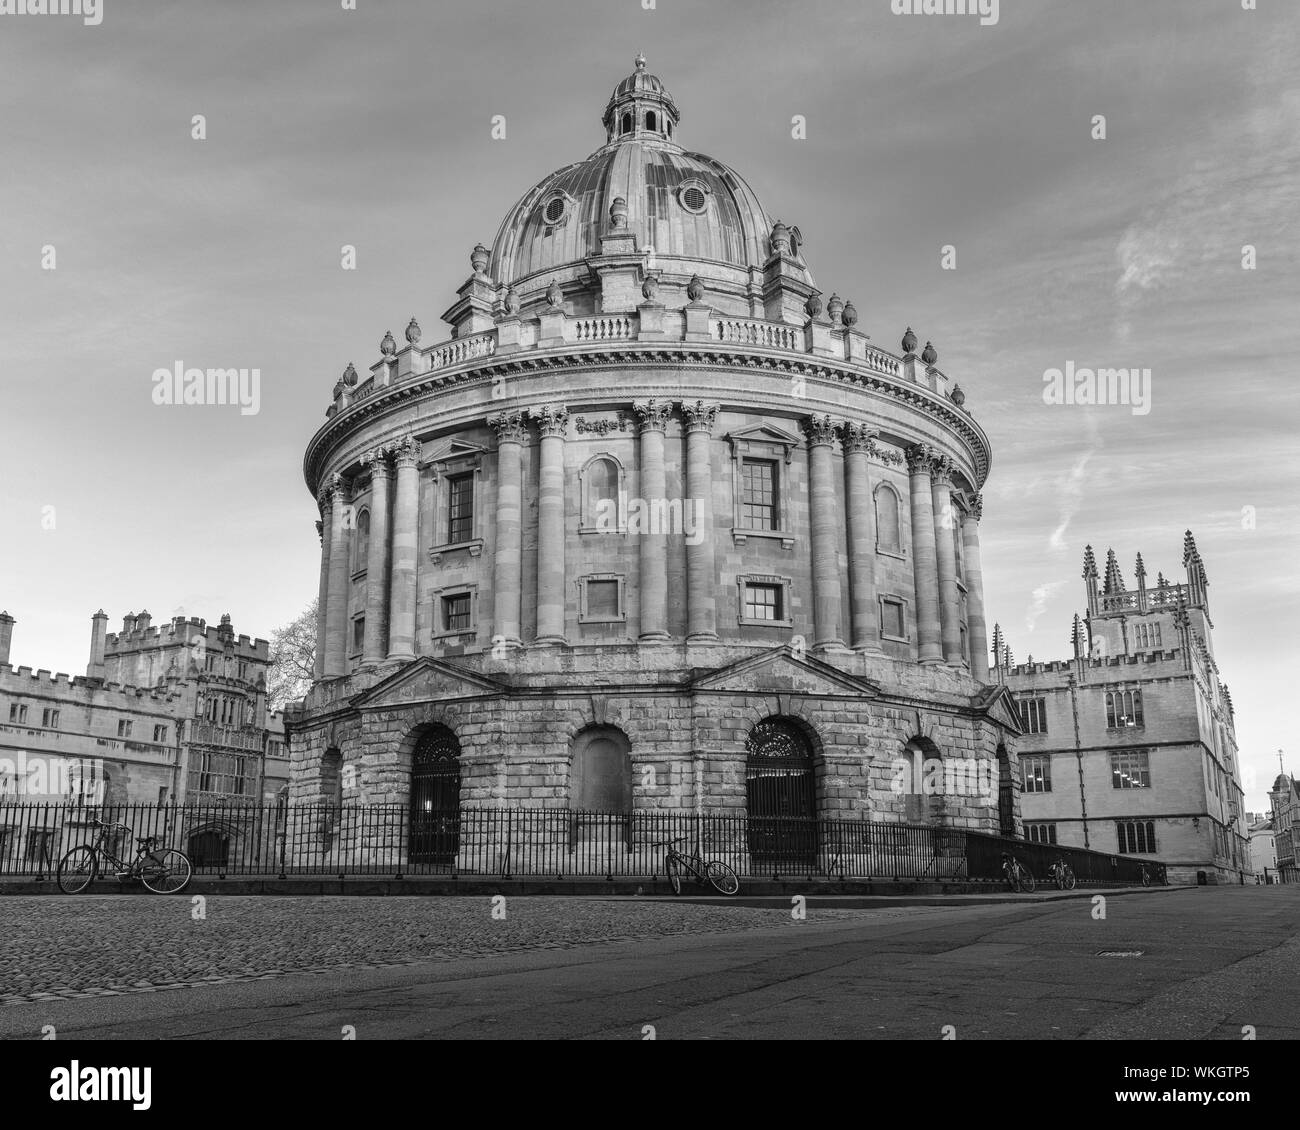 La Radcliffe Camera está situado en el corazón de Oxford, de pie detrás de la vieja Biblioteca Bodleian. Fotografiados aquí como el sol está saliendo. Foto de stock